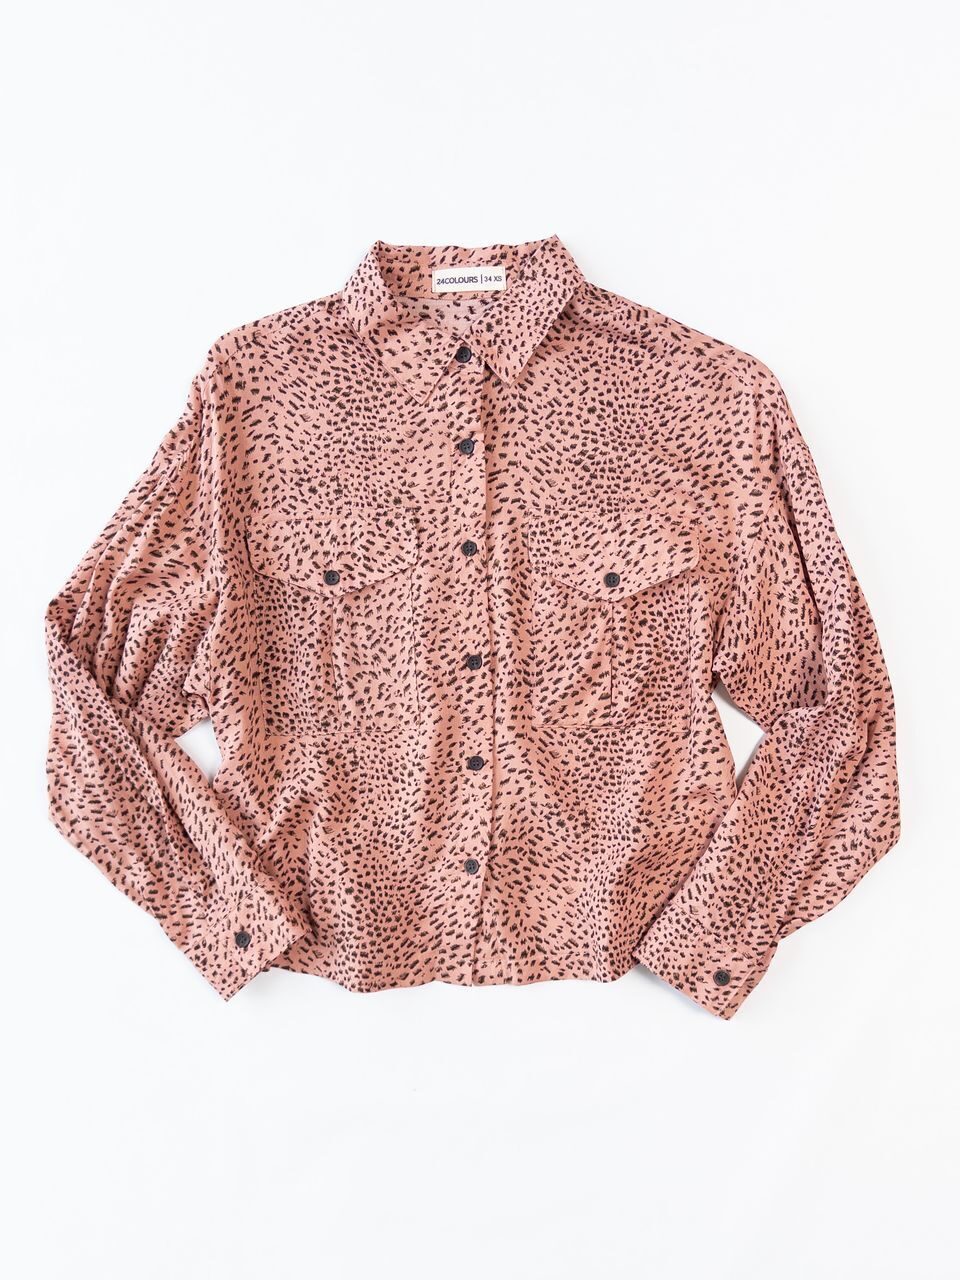 Блуза-рубашка укороченная, сзади в поясе резинка цвет персиковый/узор размер EUR 34 XS (rus 40-42) 24colours